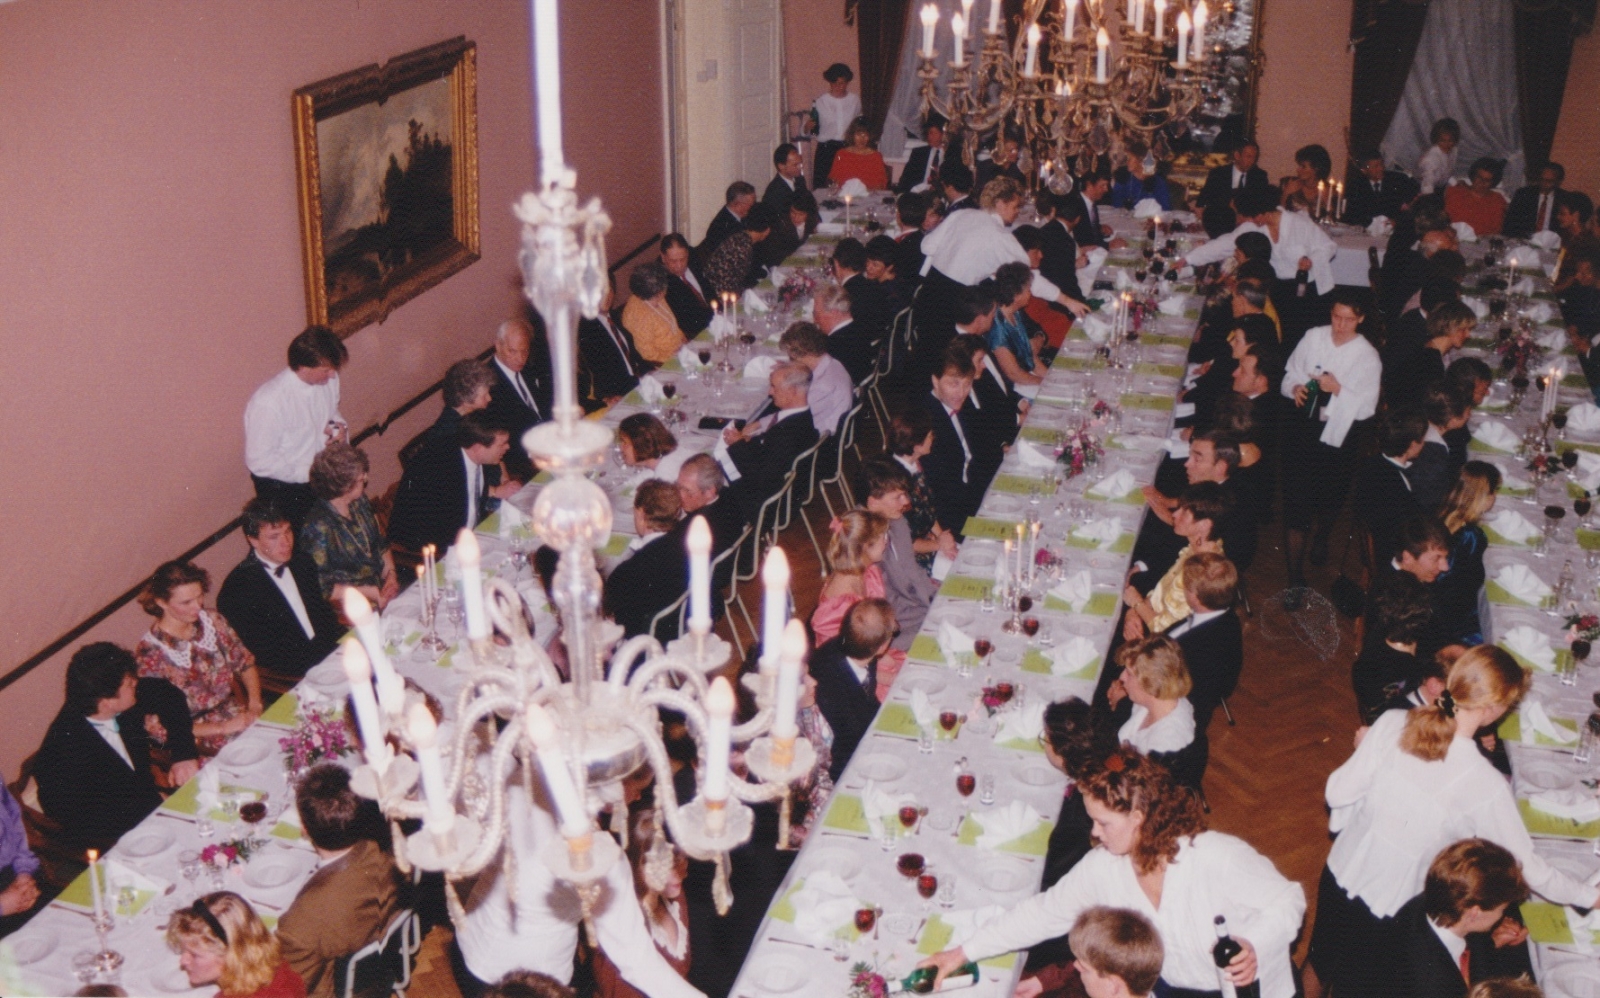 Skiklubbens 100års jubileum i 1991 ble feiret med middag på Haldens klub. Halden skiklubbs arkiv, Høiås.